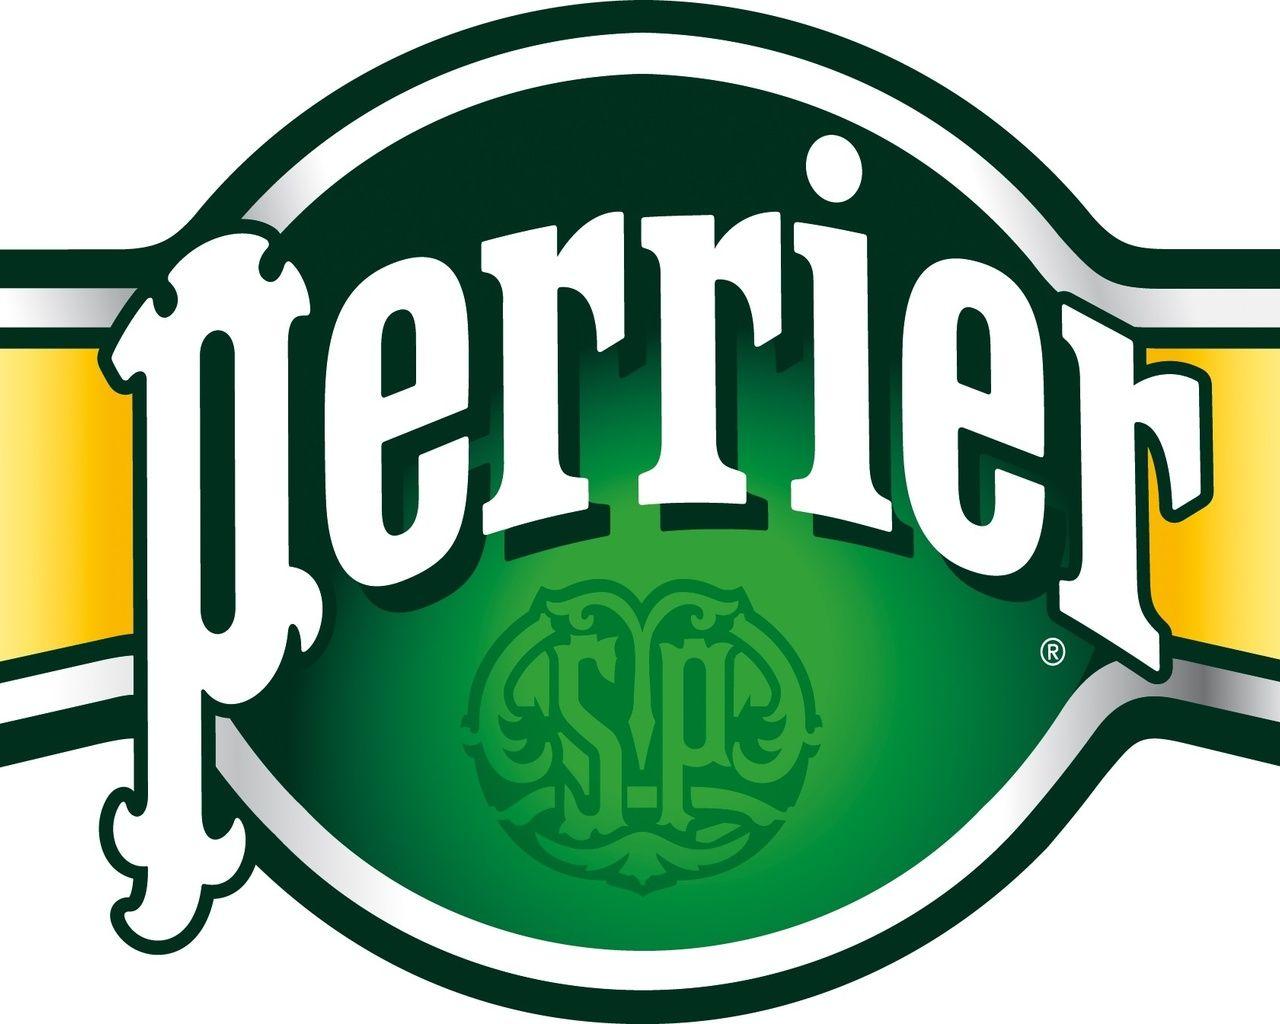 Perrier Logo - 1280x1024 Perrier, Water Brands, Perrier Logo, Perrier Water Brand ...